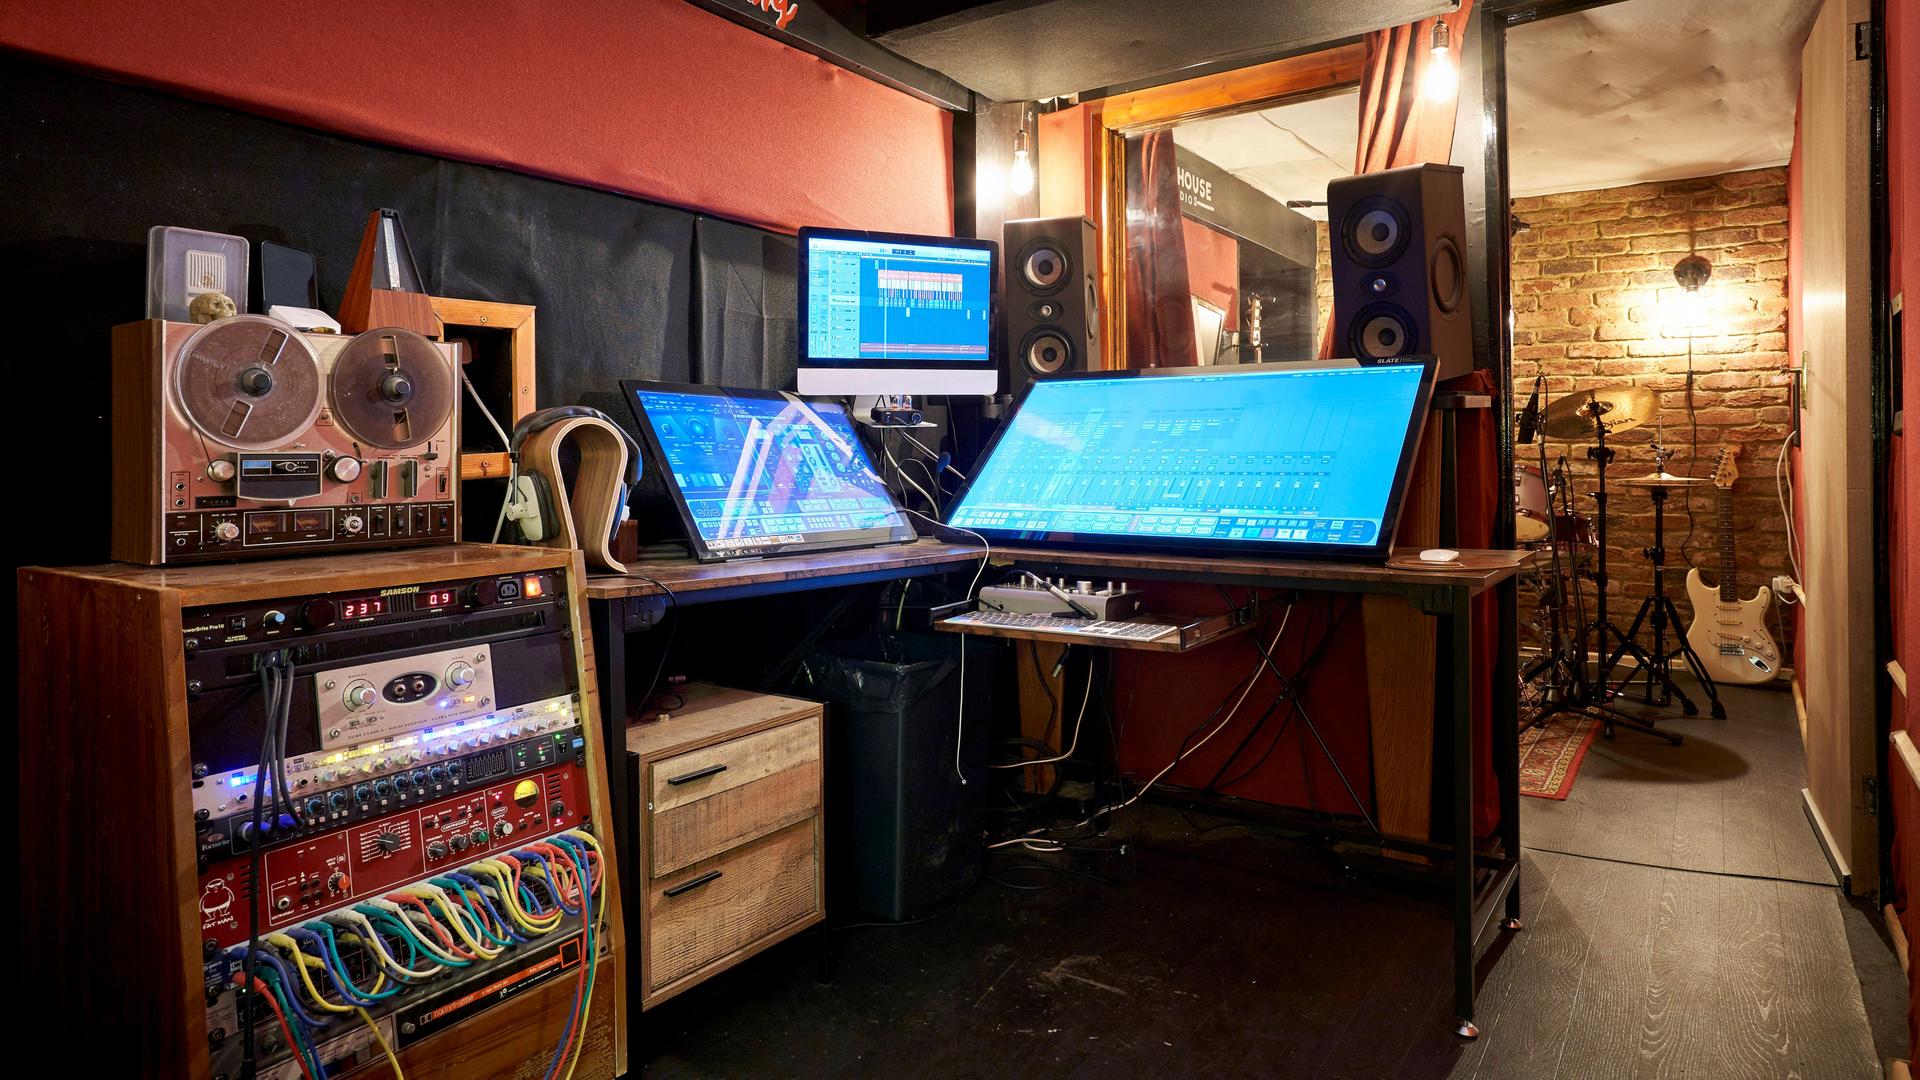 Einrichtung eines Tonstudios mit Bildschirmen, Lautsprechern und Patchfeldern mit Kabelverbindungen.